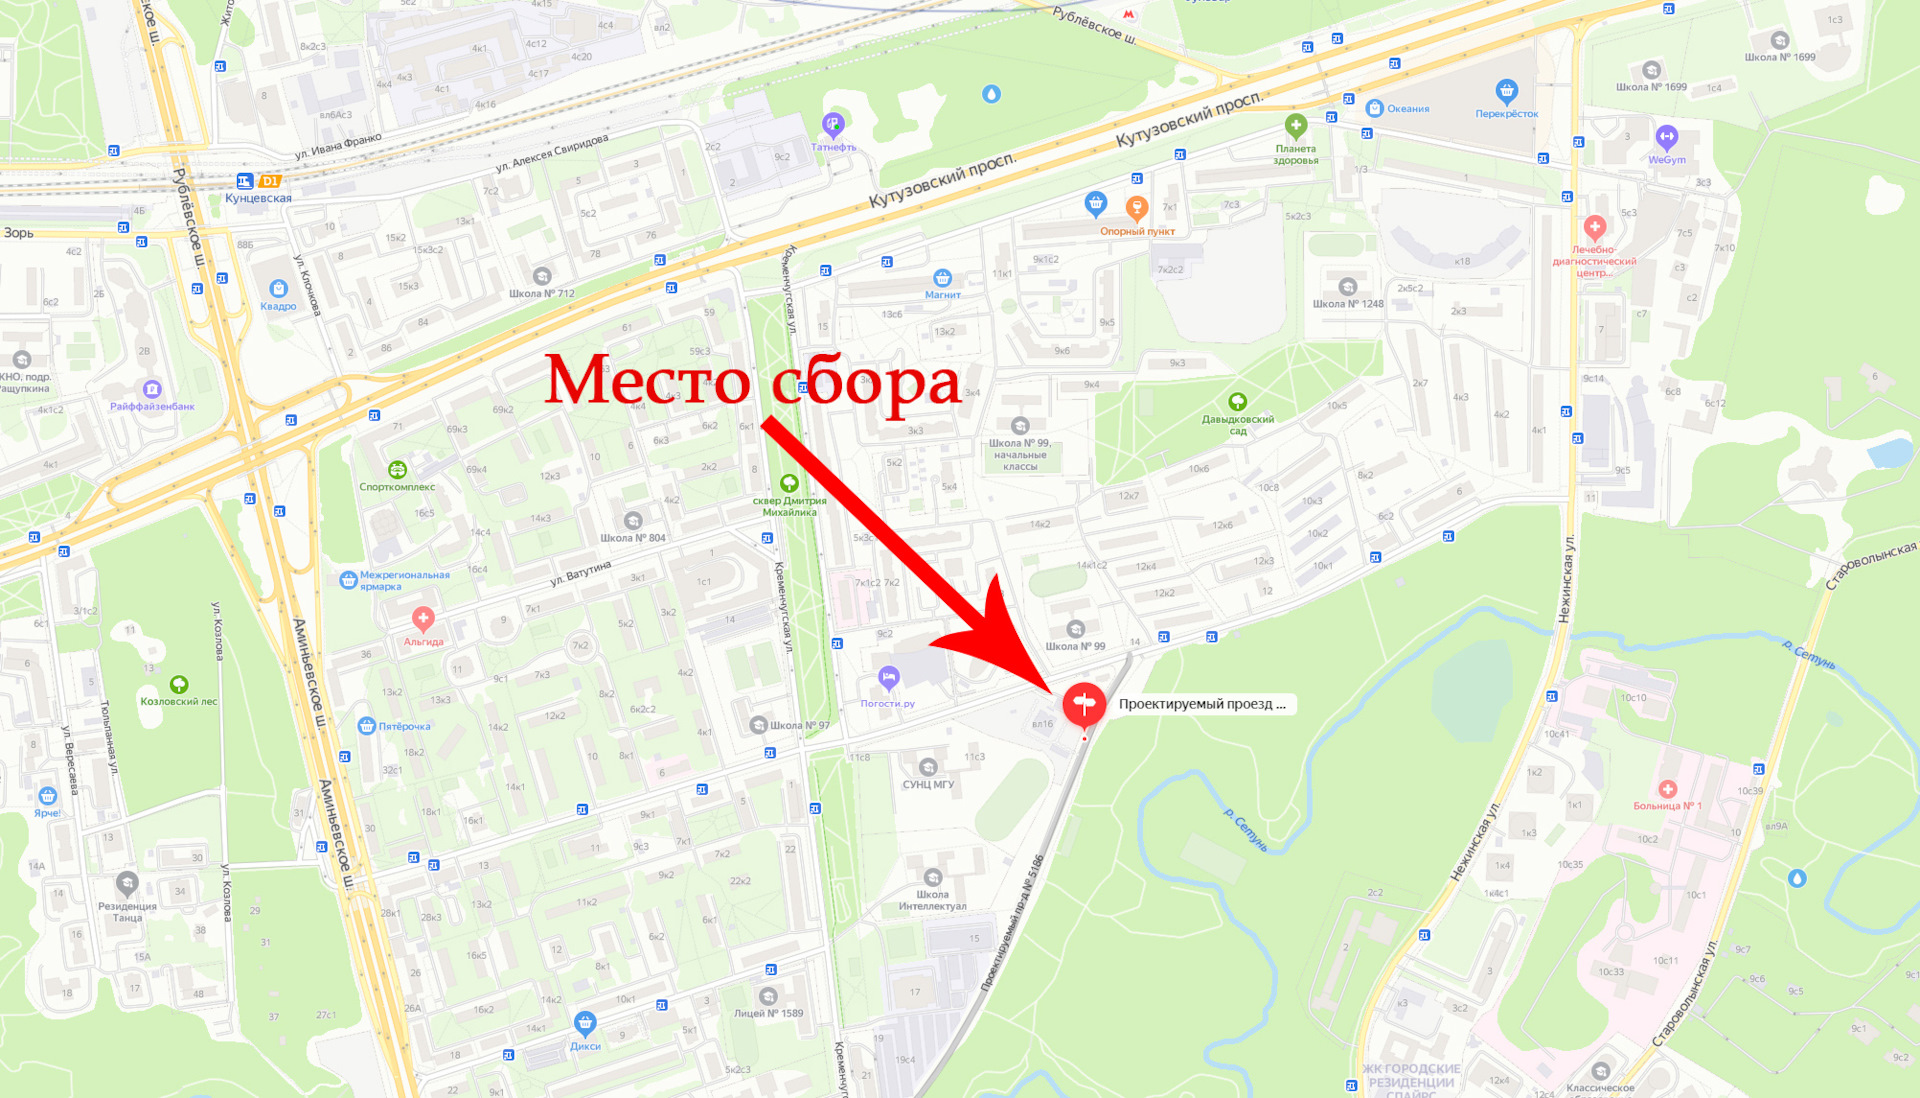 Маршрут гибдд строгино. Проектируемый проезд. Проектируемый проезд Москва. Проектируемый проезд 6092. Проектируемый проезд Москва на карте.